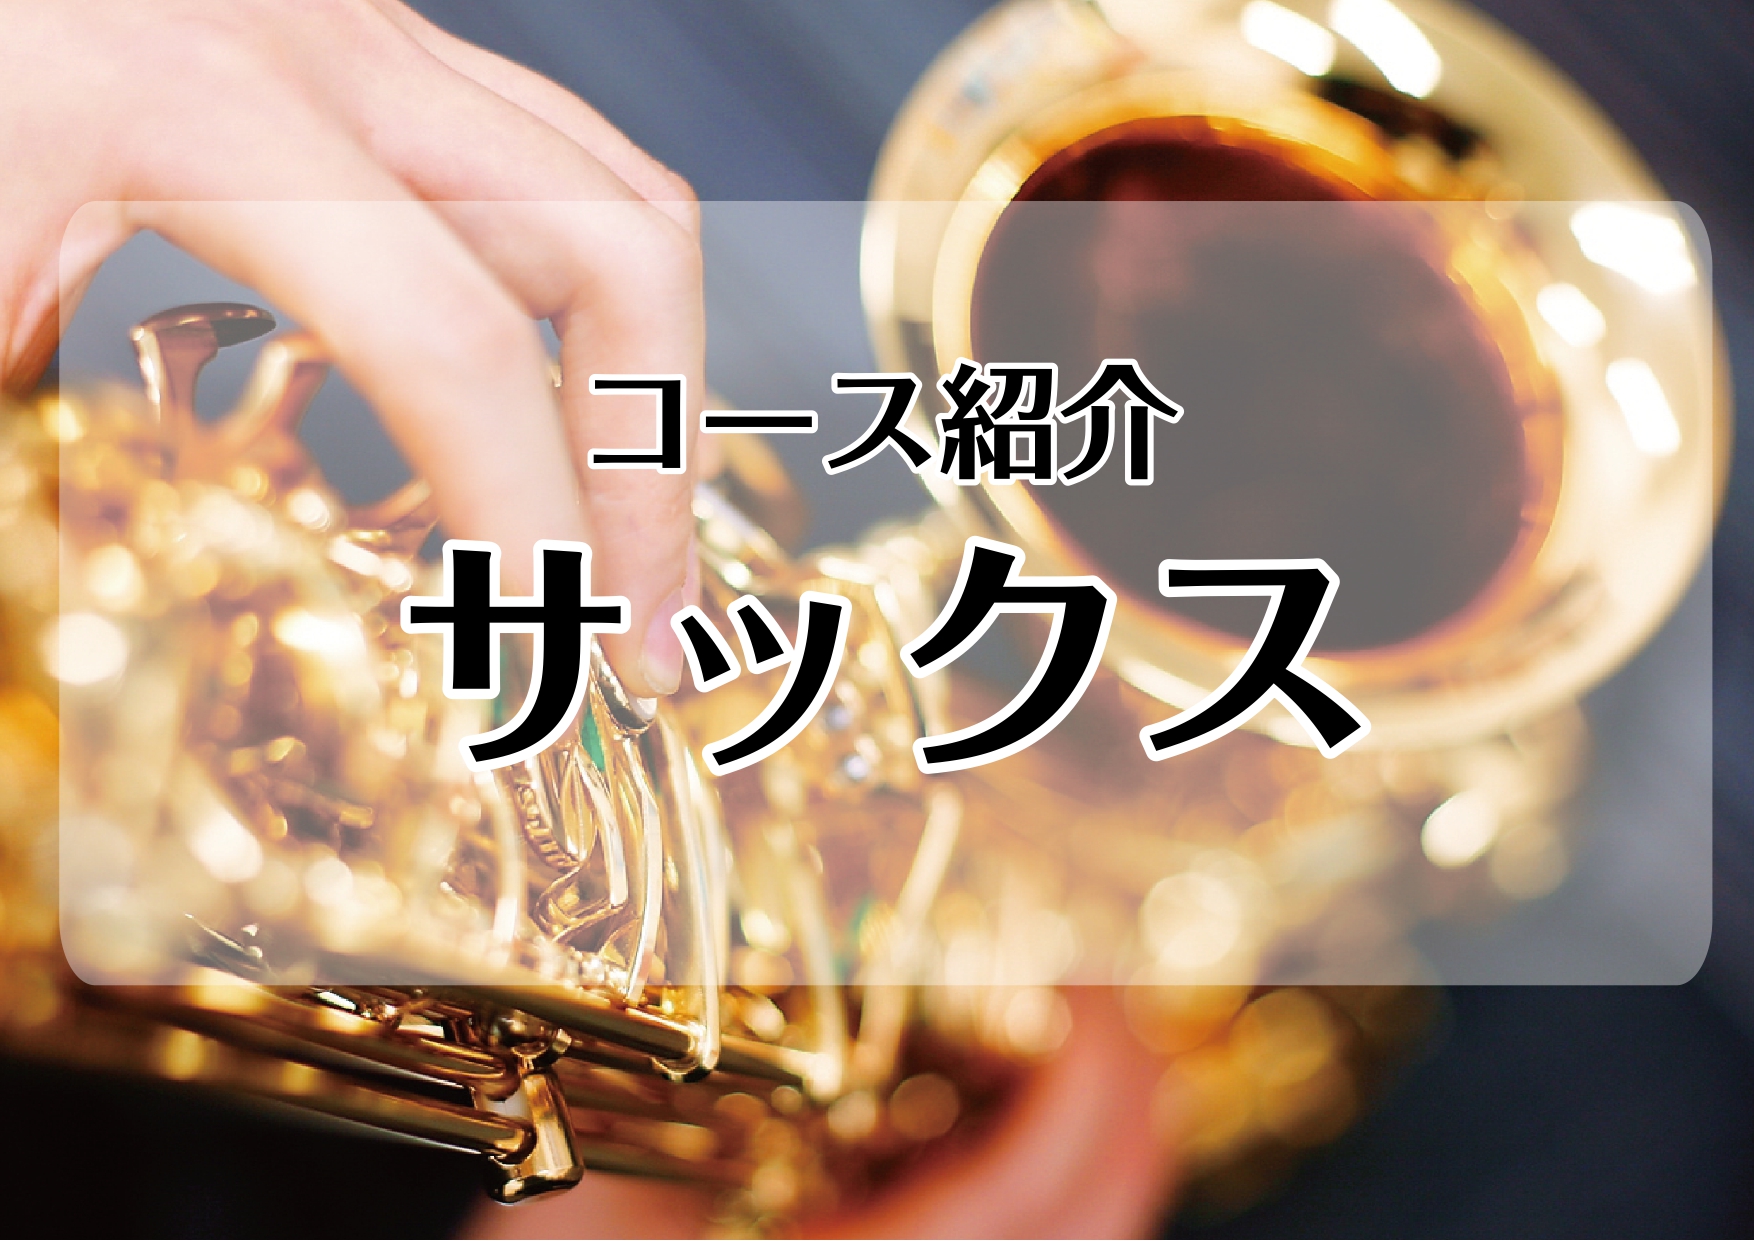 *[http://www.shimamura.co.jp/lesson/course/saxophone/:title=サックスコース] 金管楽器と木管楽器の長所を兼ね備えたサックス。]]深みのある甘い音色から、ダイナミックな迫力のある音色まで、豊かな表現力を持ちます。]]最もポピュラーなアルトサッ […]